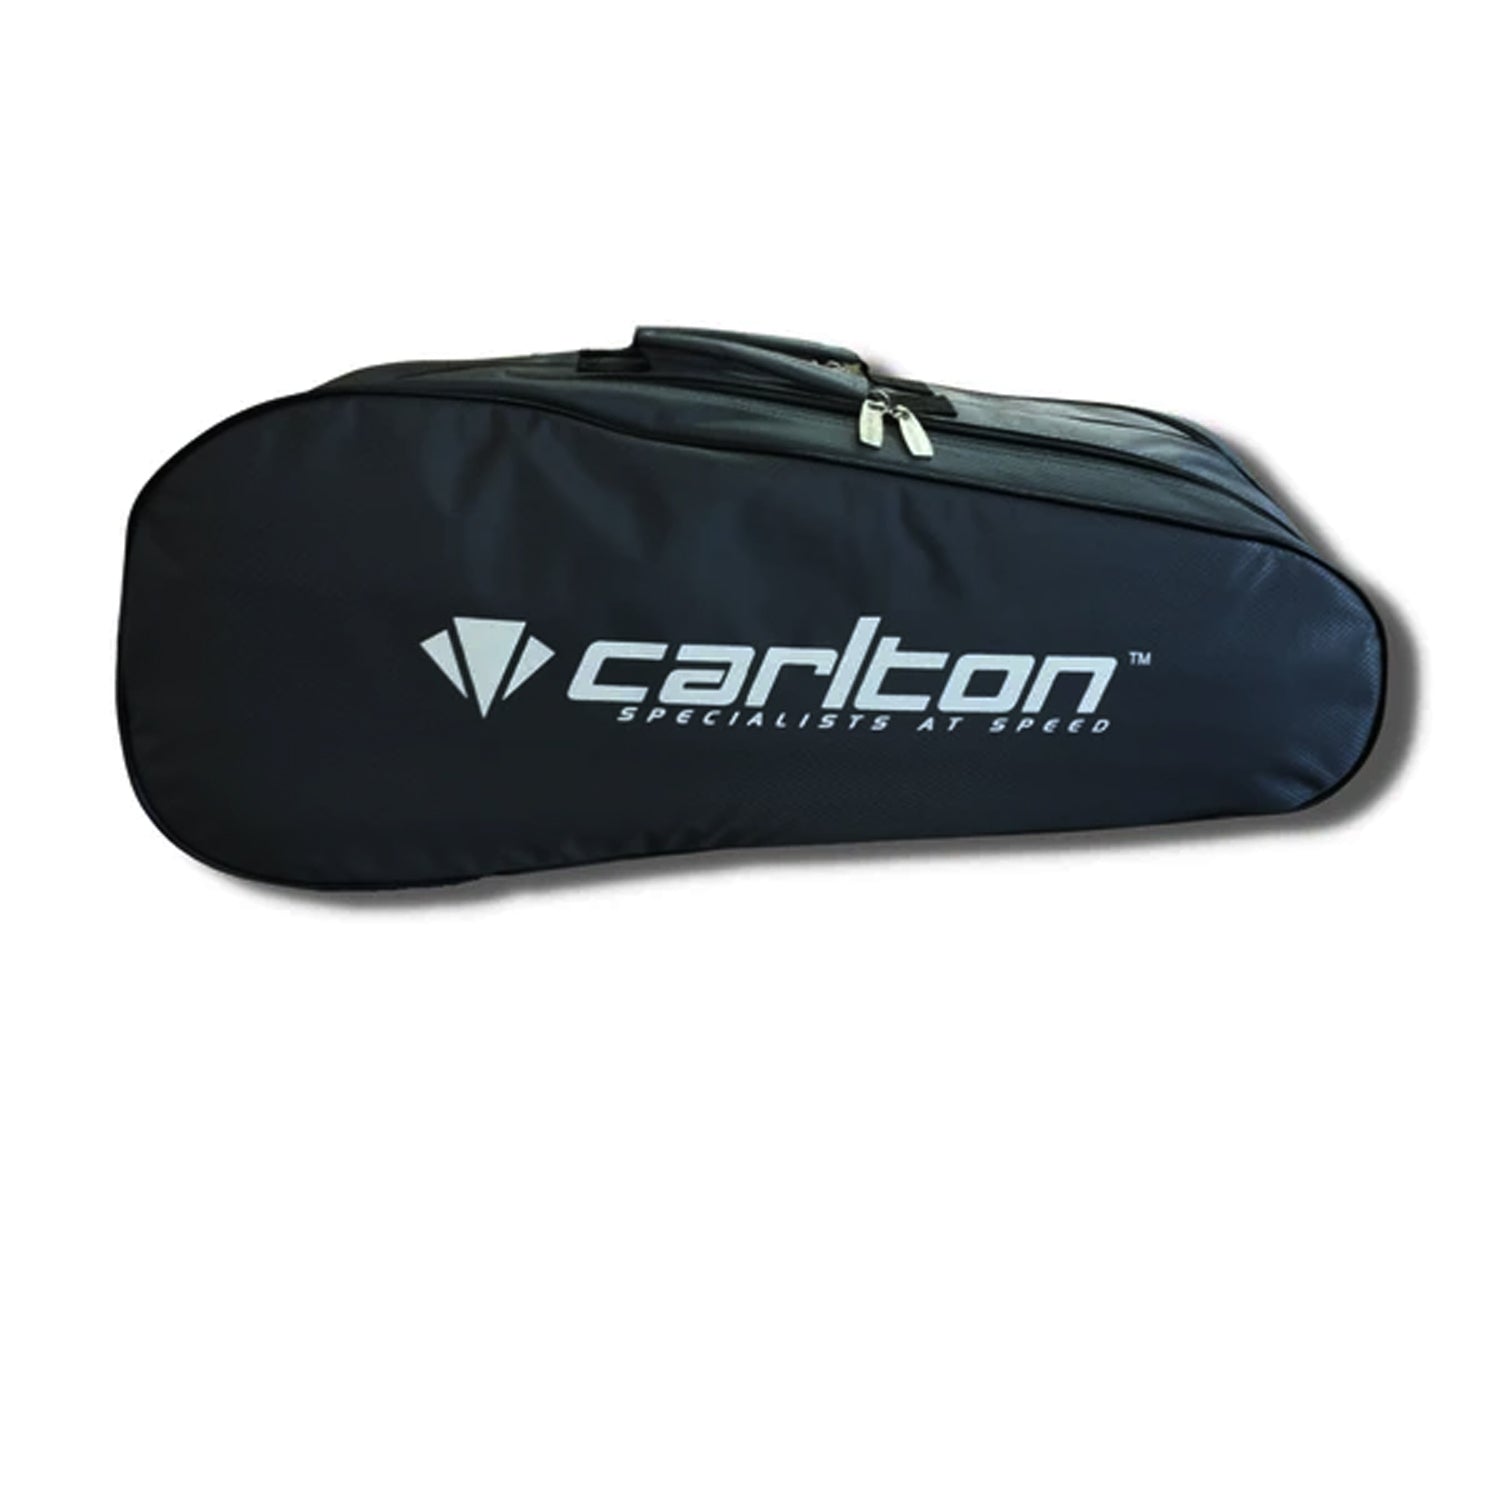 Carlton Vapour Trail2 Compartment Racquet Bag - Best Price online Prokicksports.com